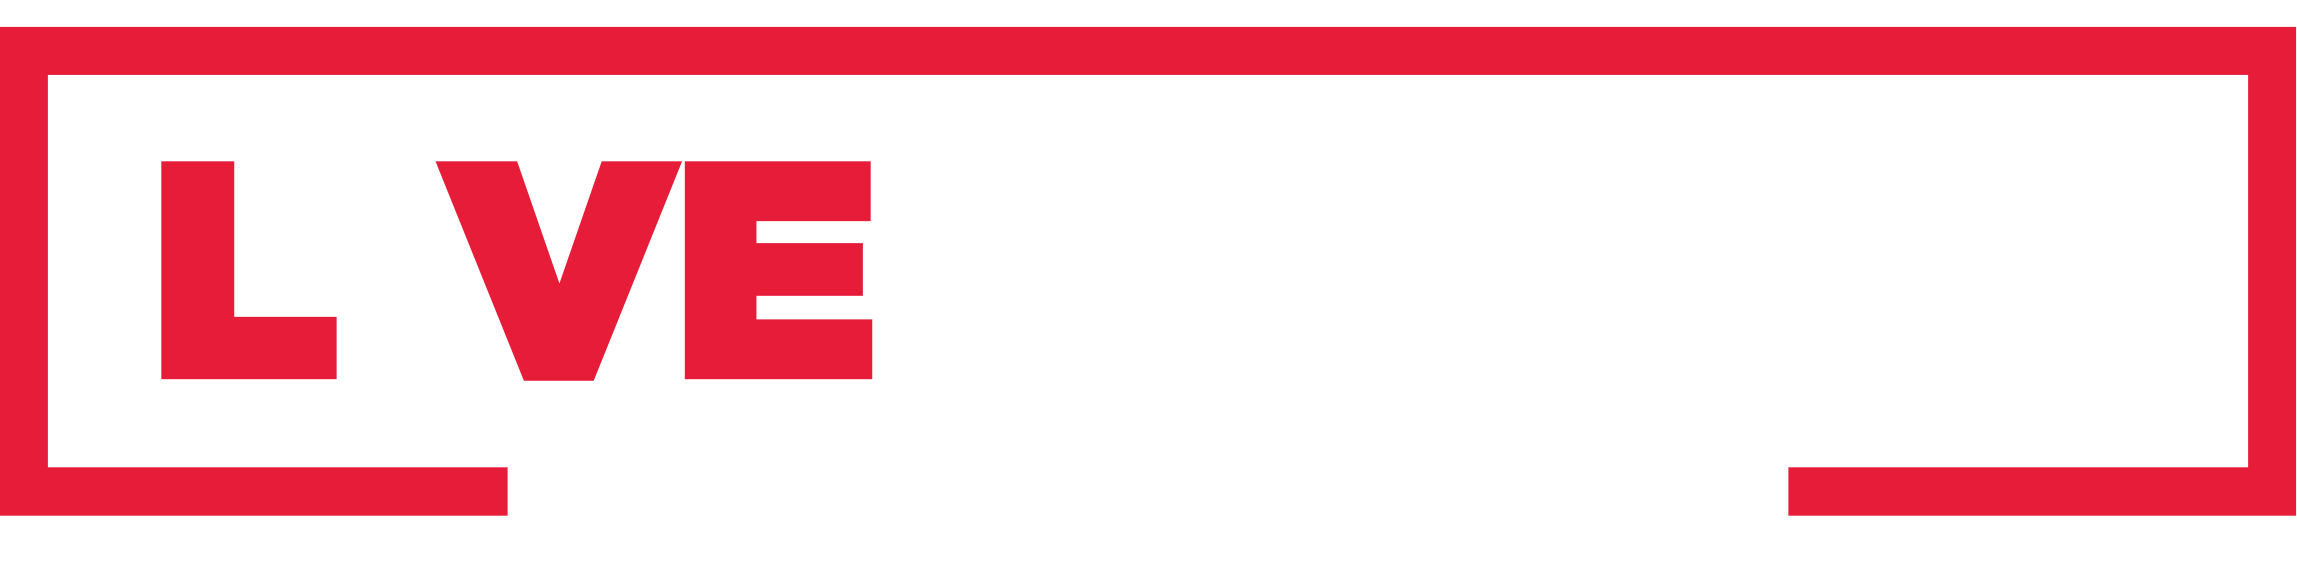 Livenation.com Logo - Live Nation Venue Guidelines